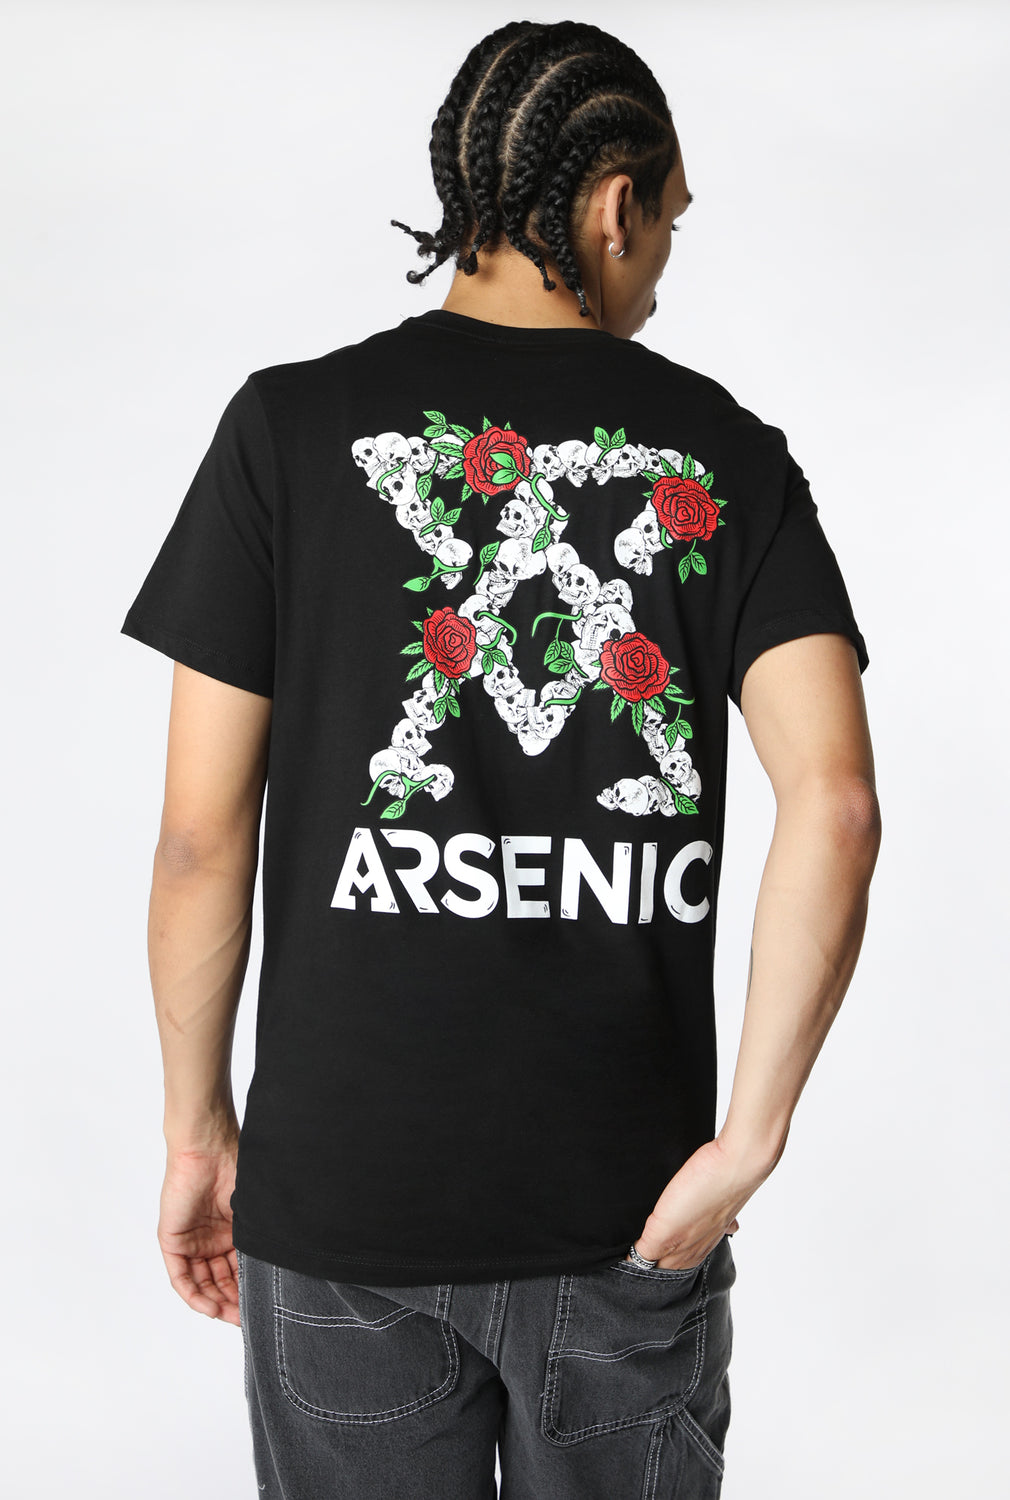 Arsenic Mens Skulls & Roses T-shirt Black